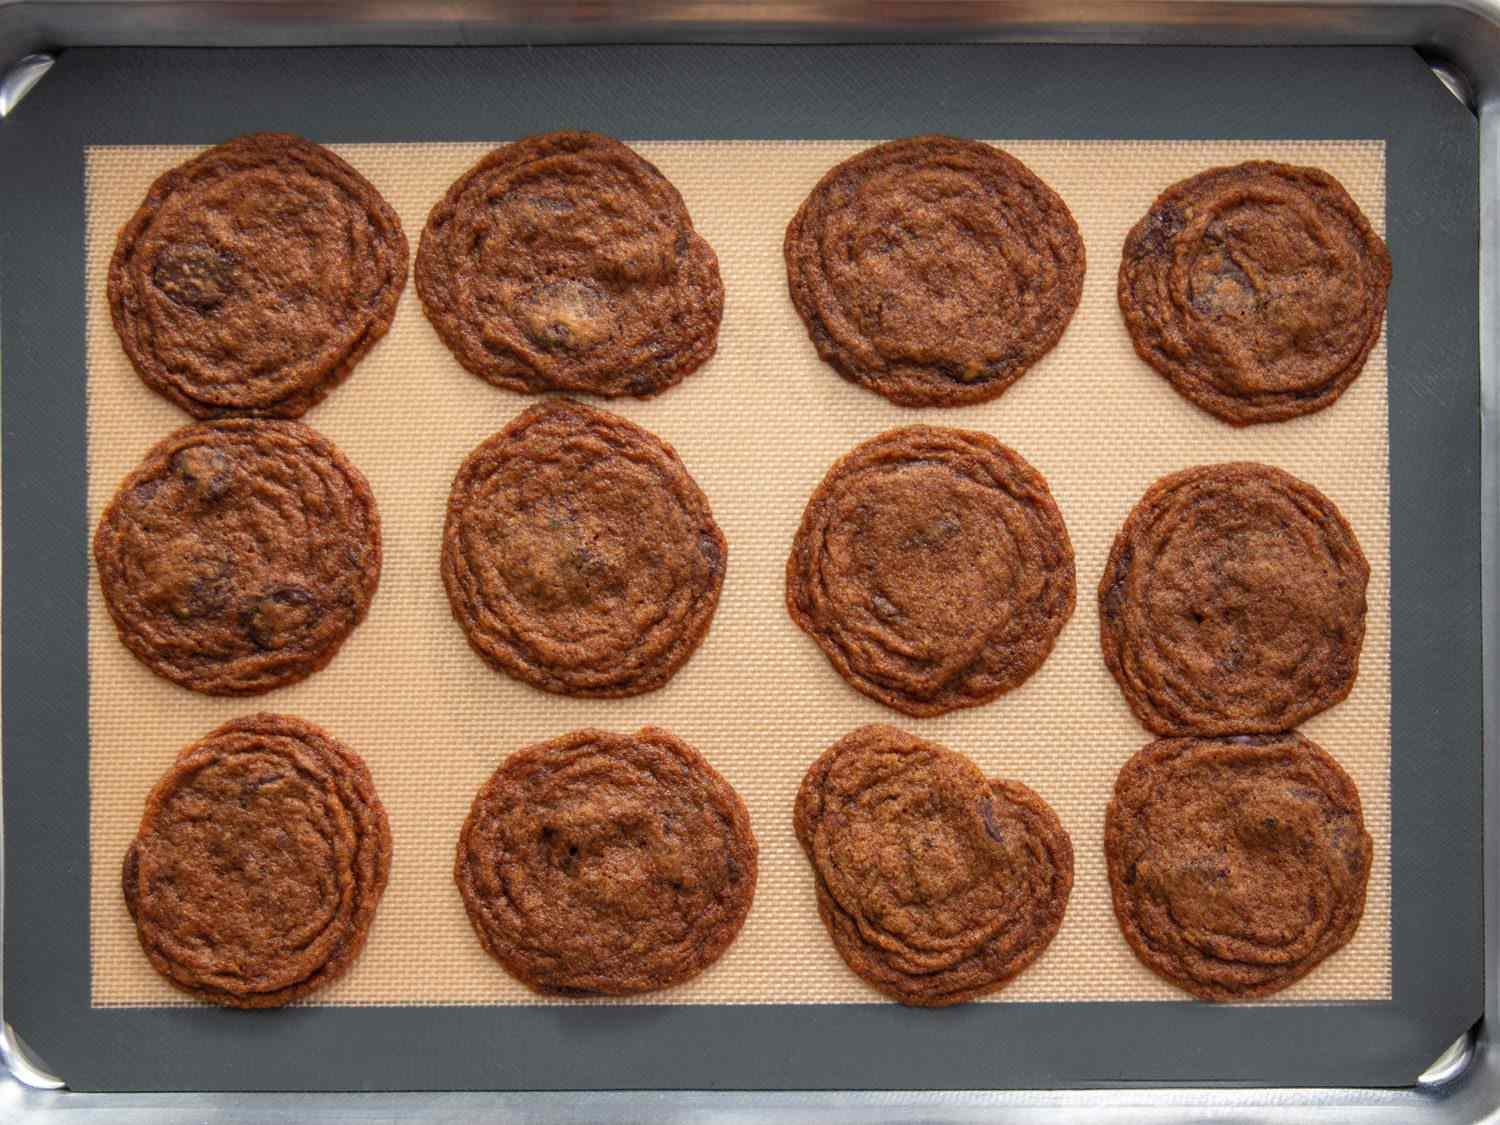 硅胶烤制的曲奇饼有过多的延展和波纹